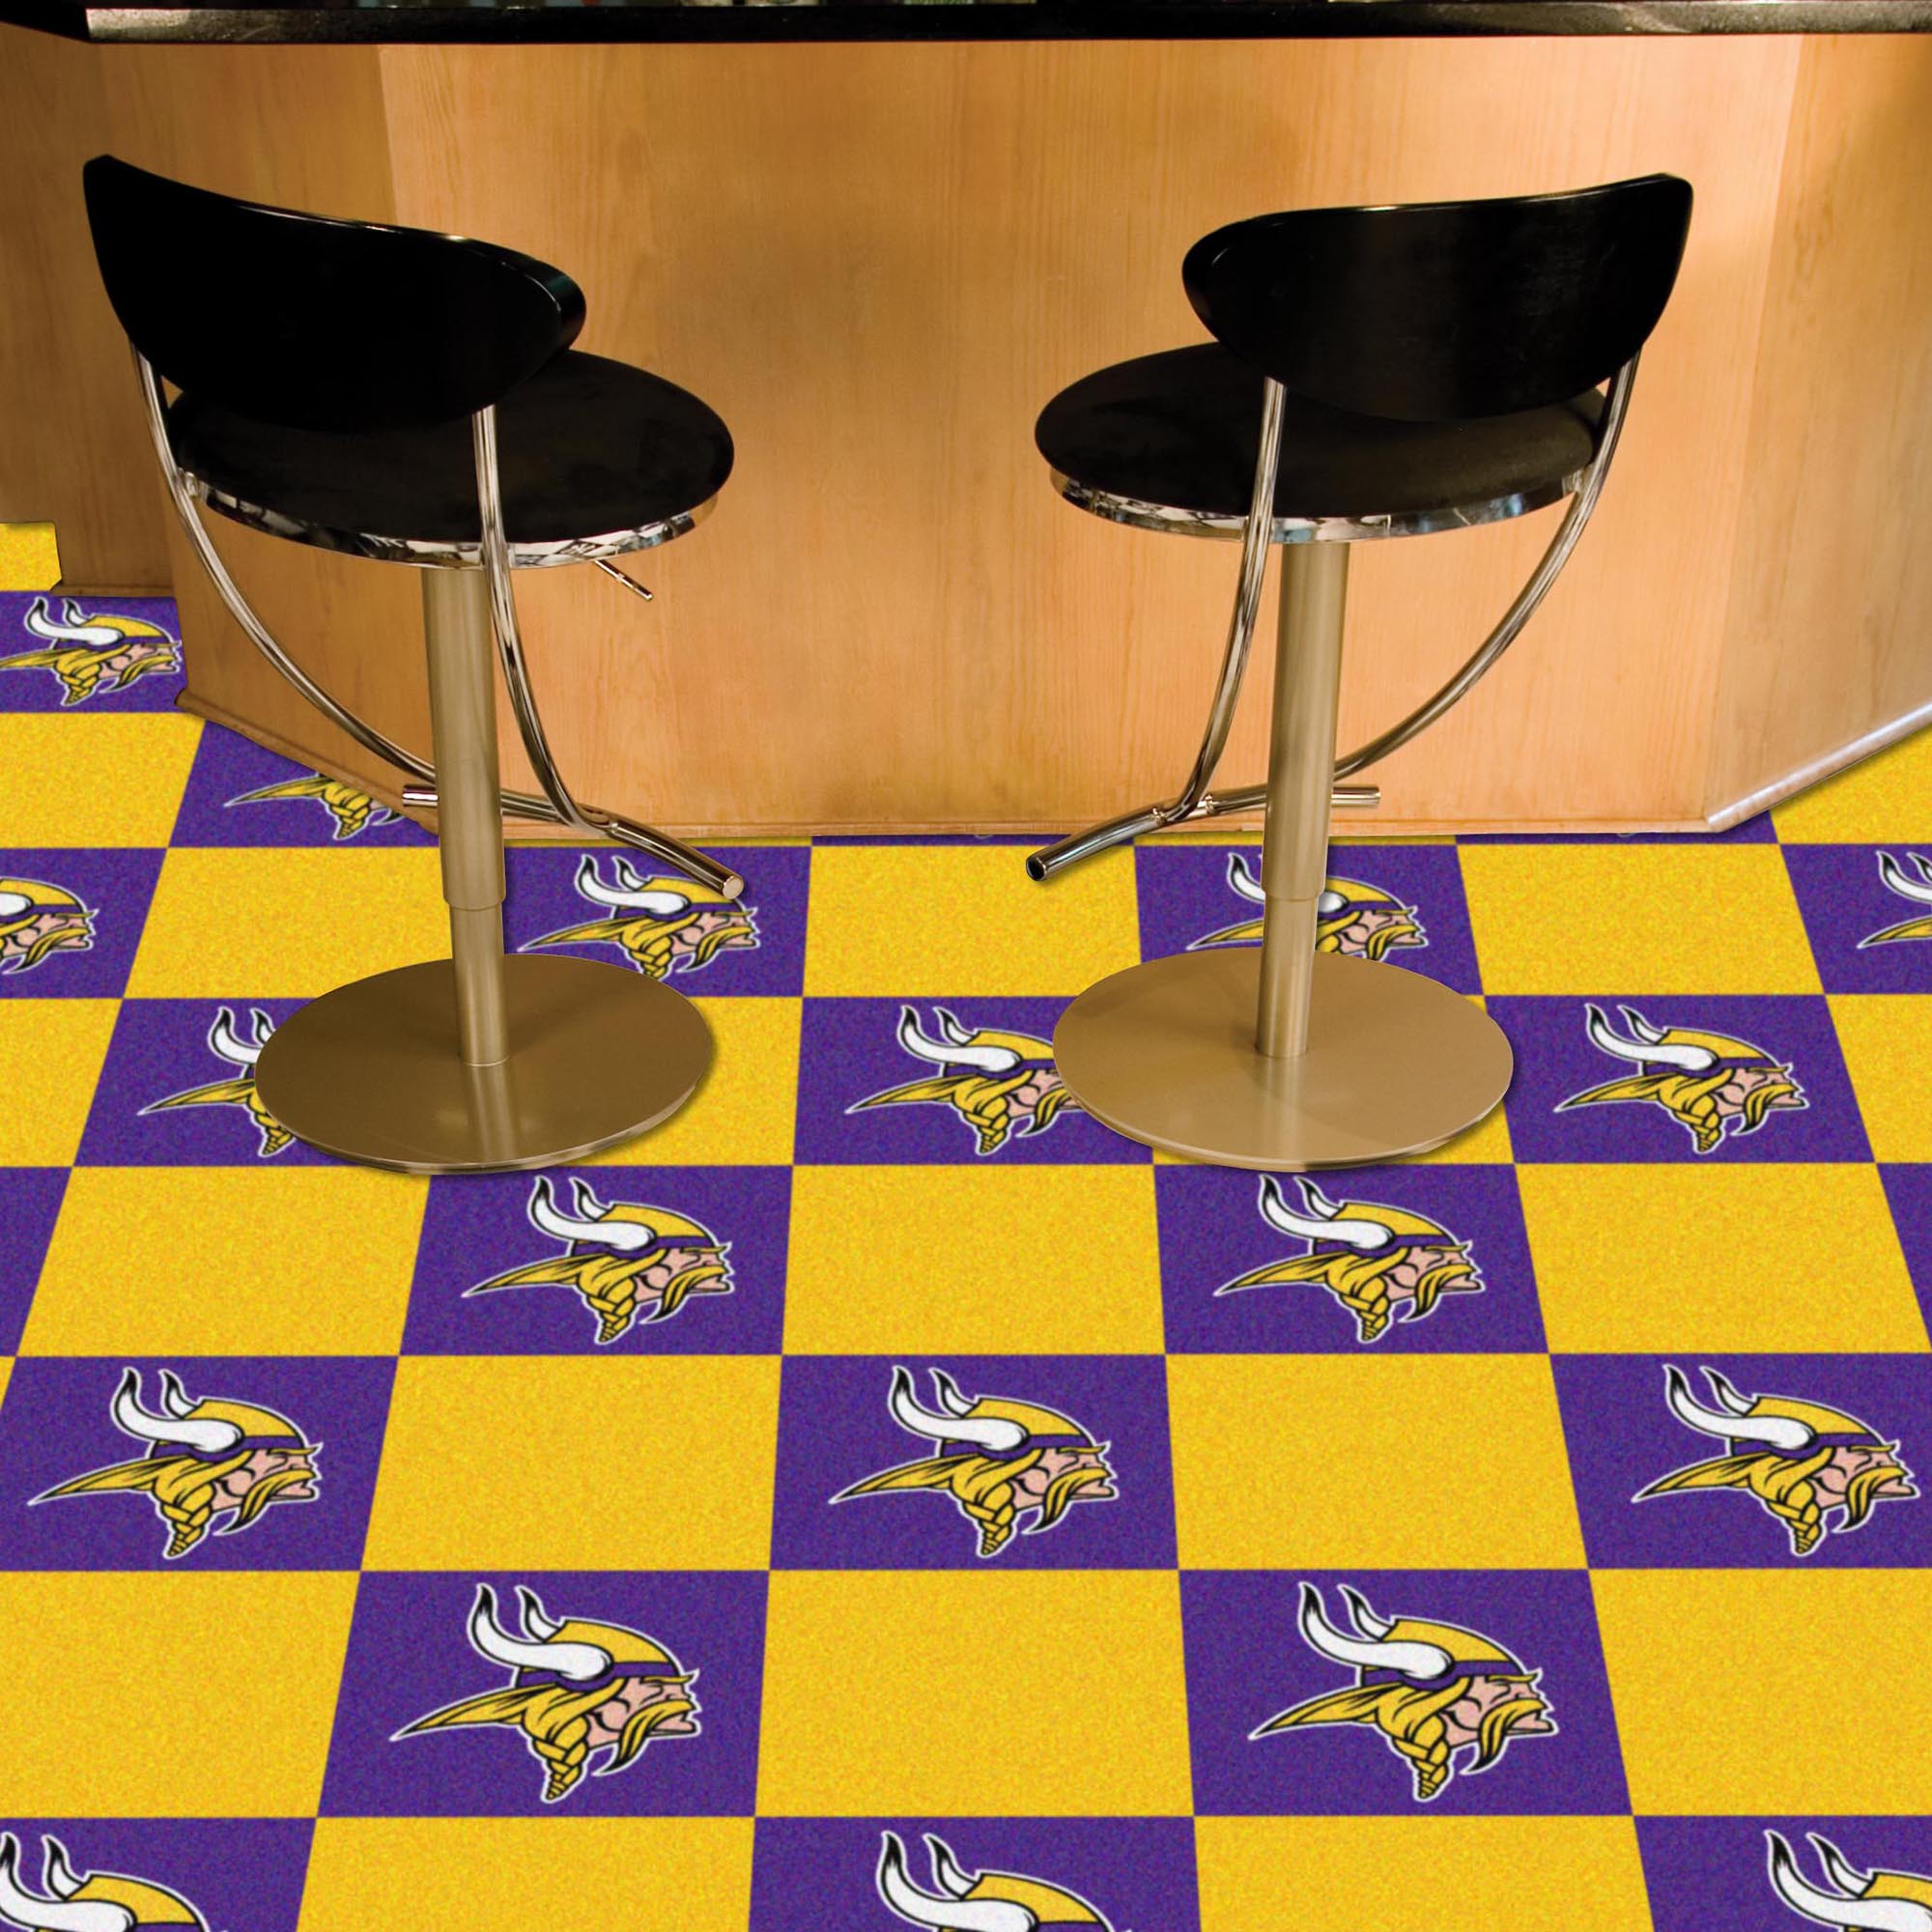 Vikings Team Carpet Tiles - 45 sq ft